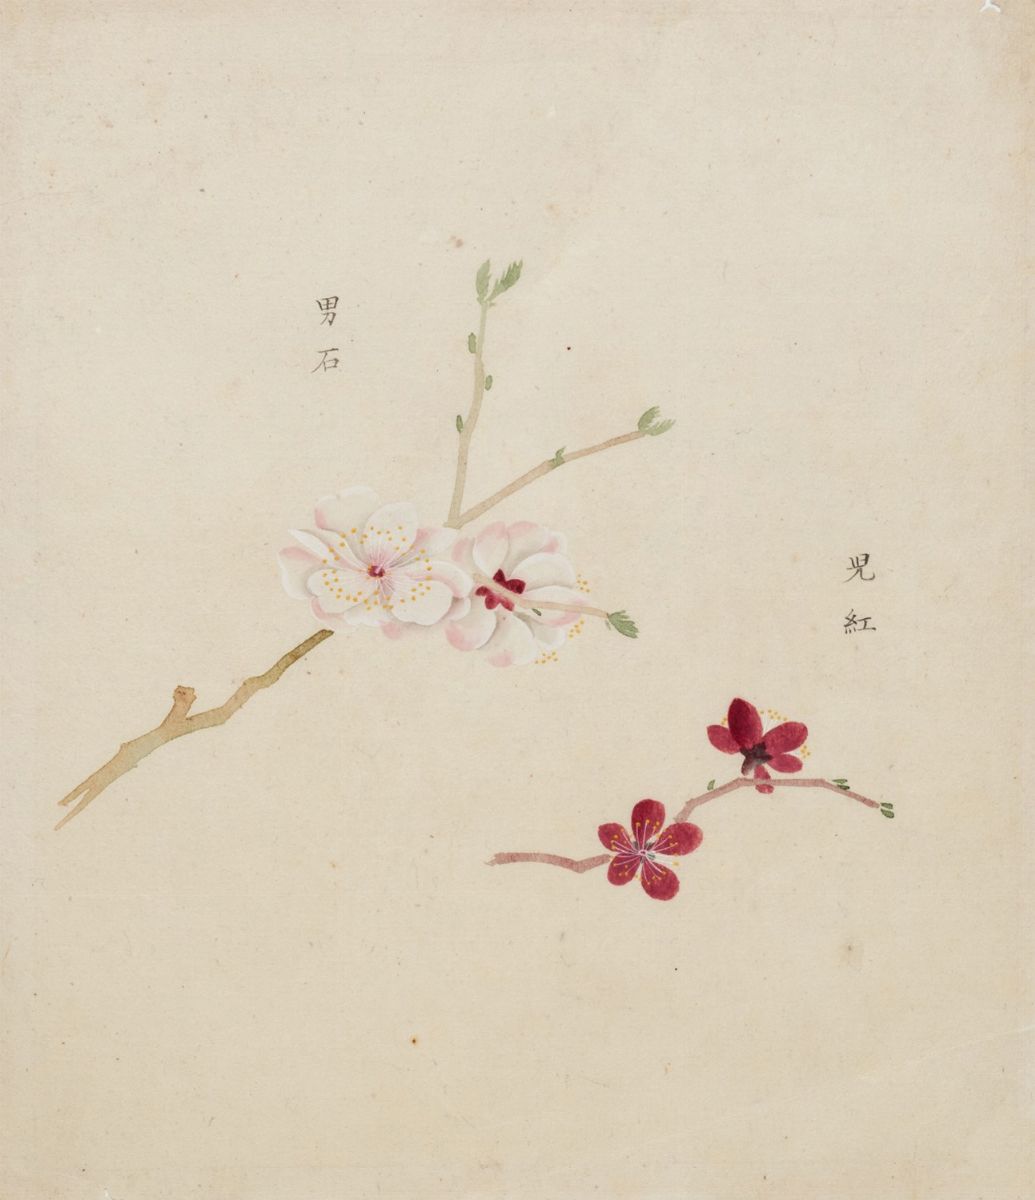 Giappone - Sakura - Fiori di ciliegio 1868